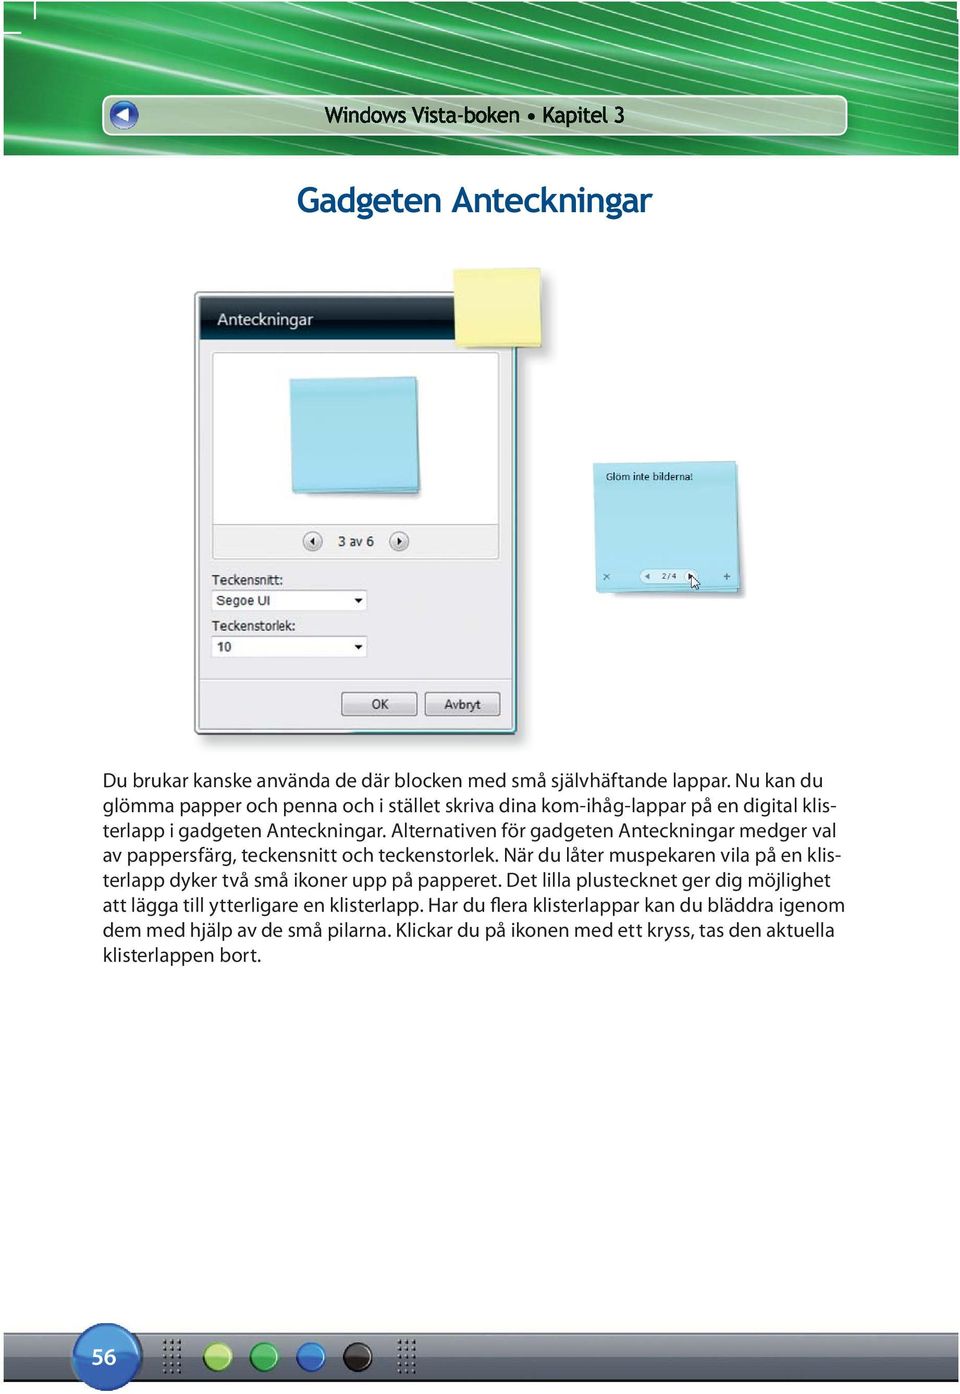 Alternativen för gadgeten Anteckningar medger val av pappersfärg, teckensnitt och teckenstorlek.